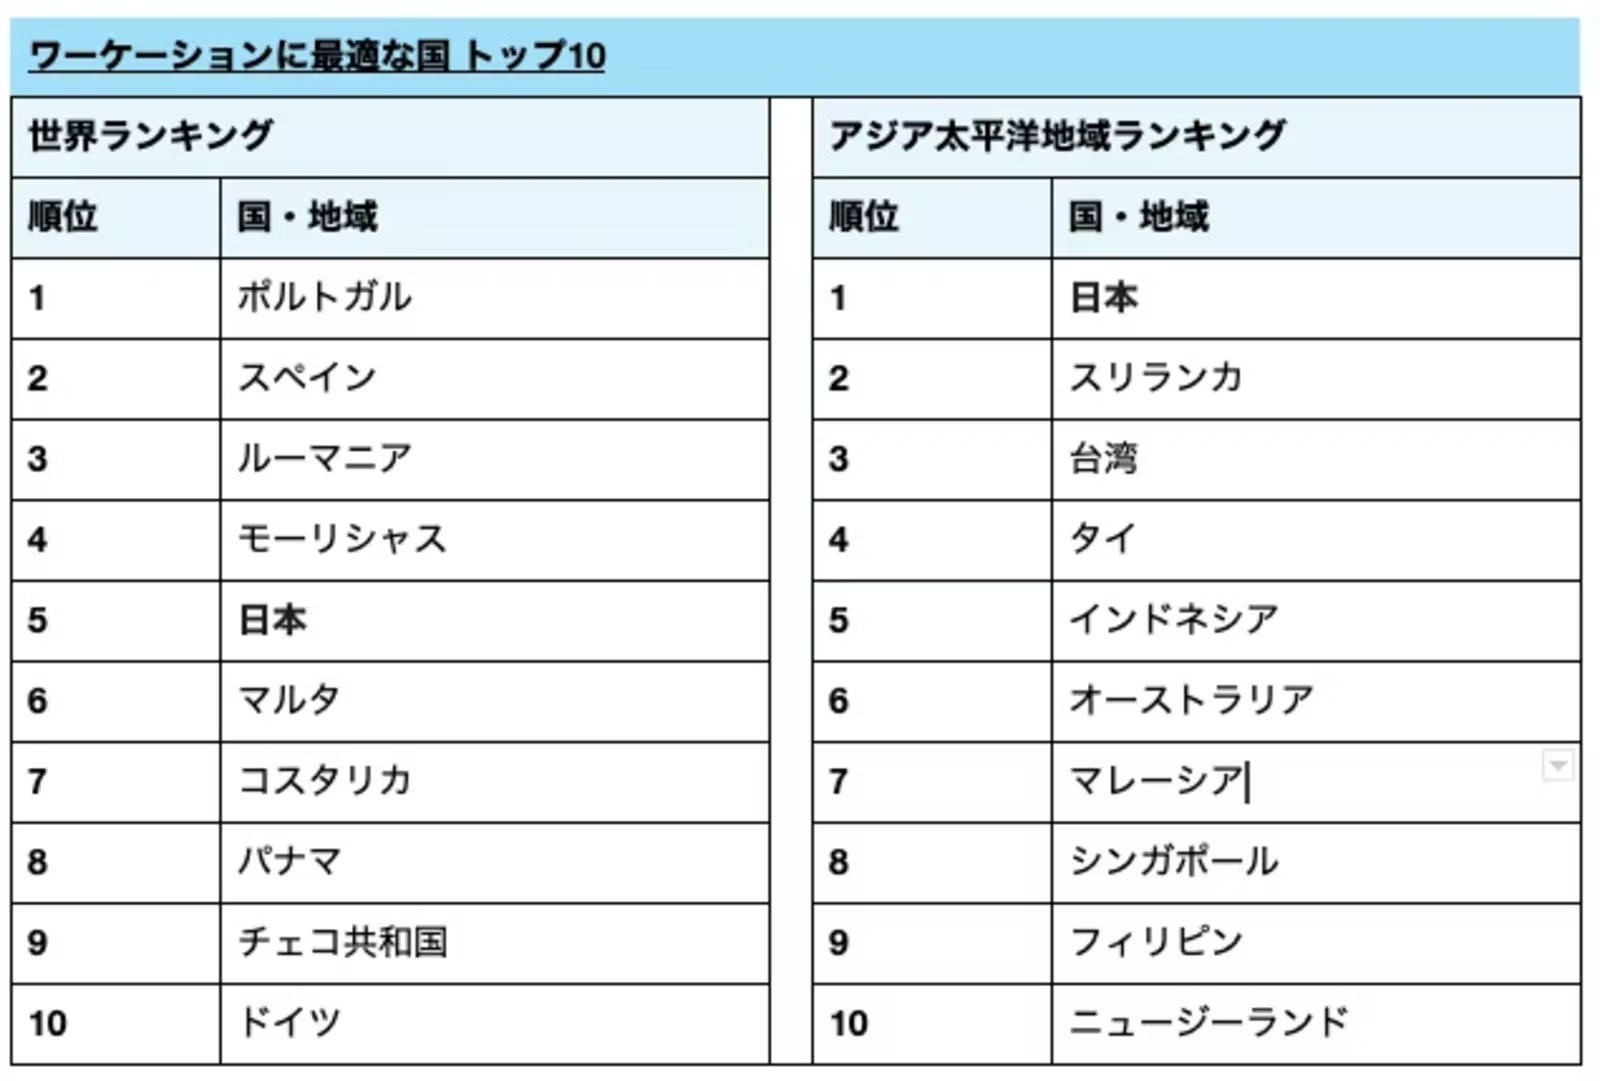 「ワーケーションに最適な国」日本は世界5位に アジア太平洋地域では首位